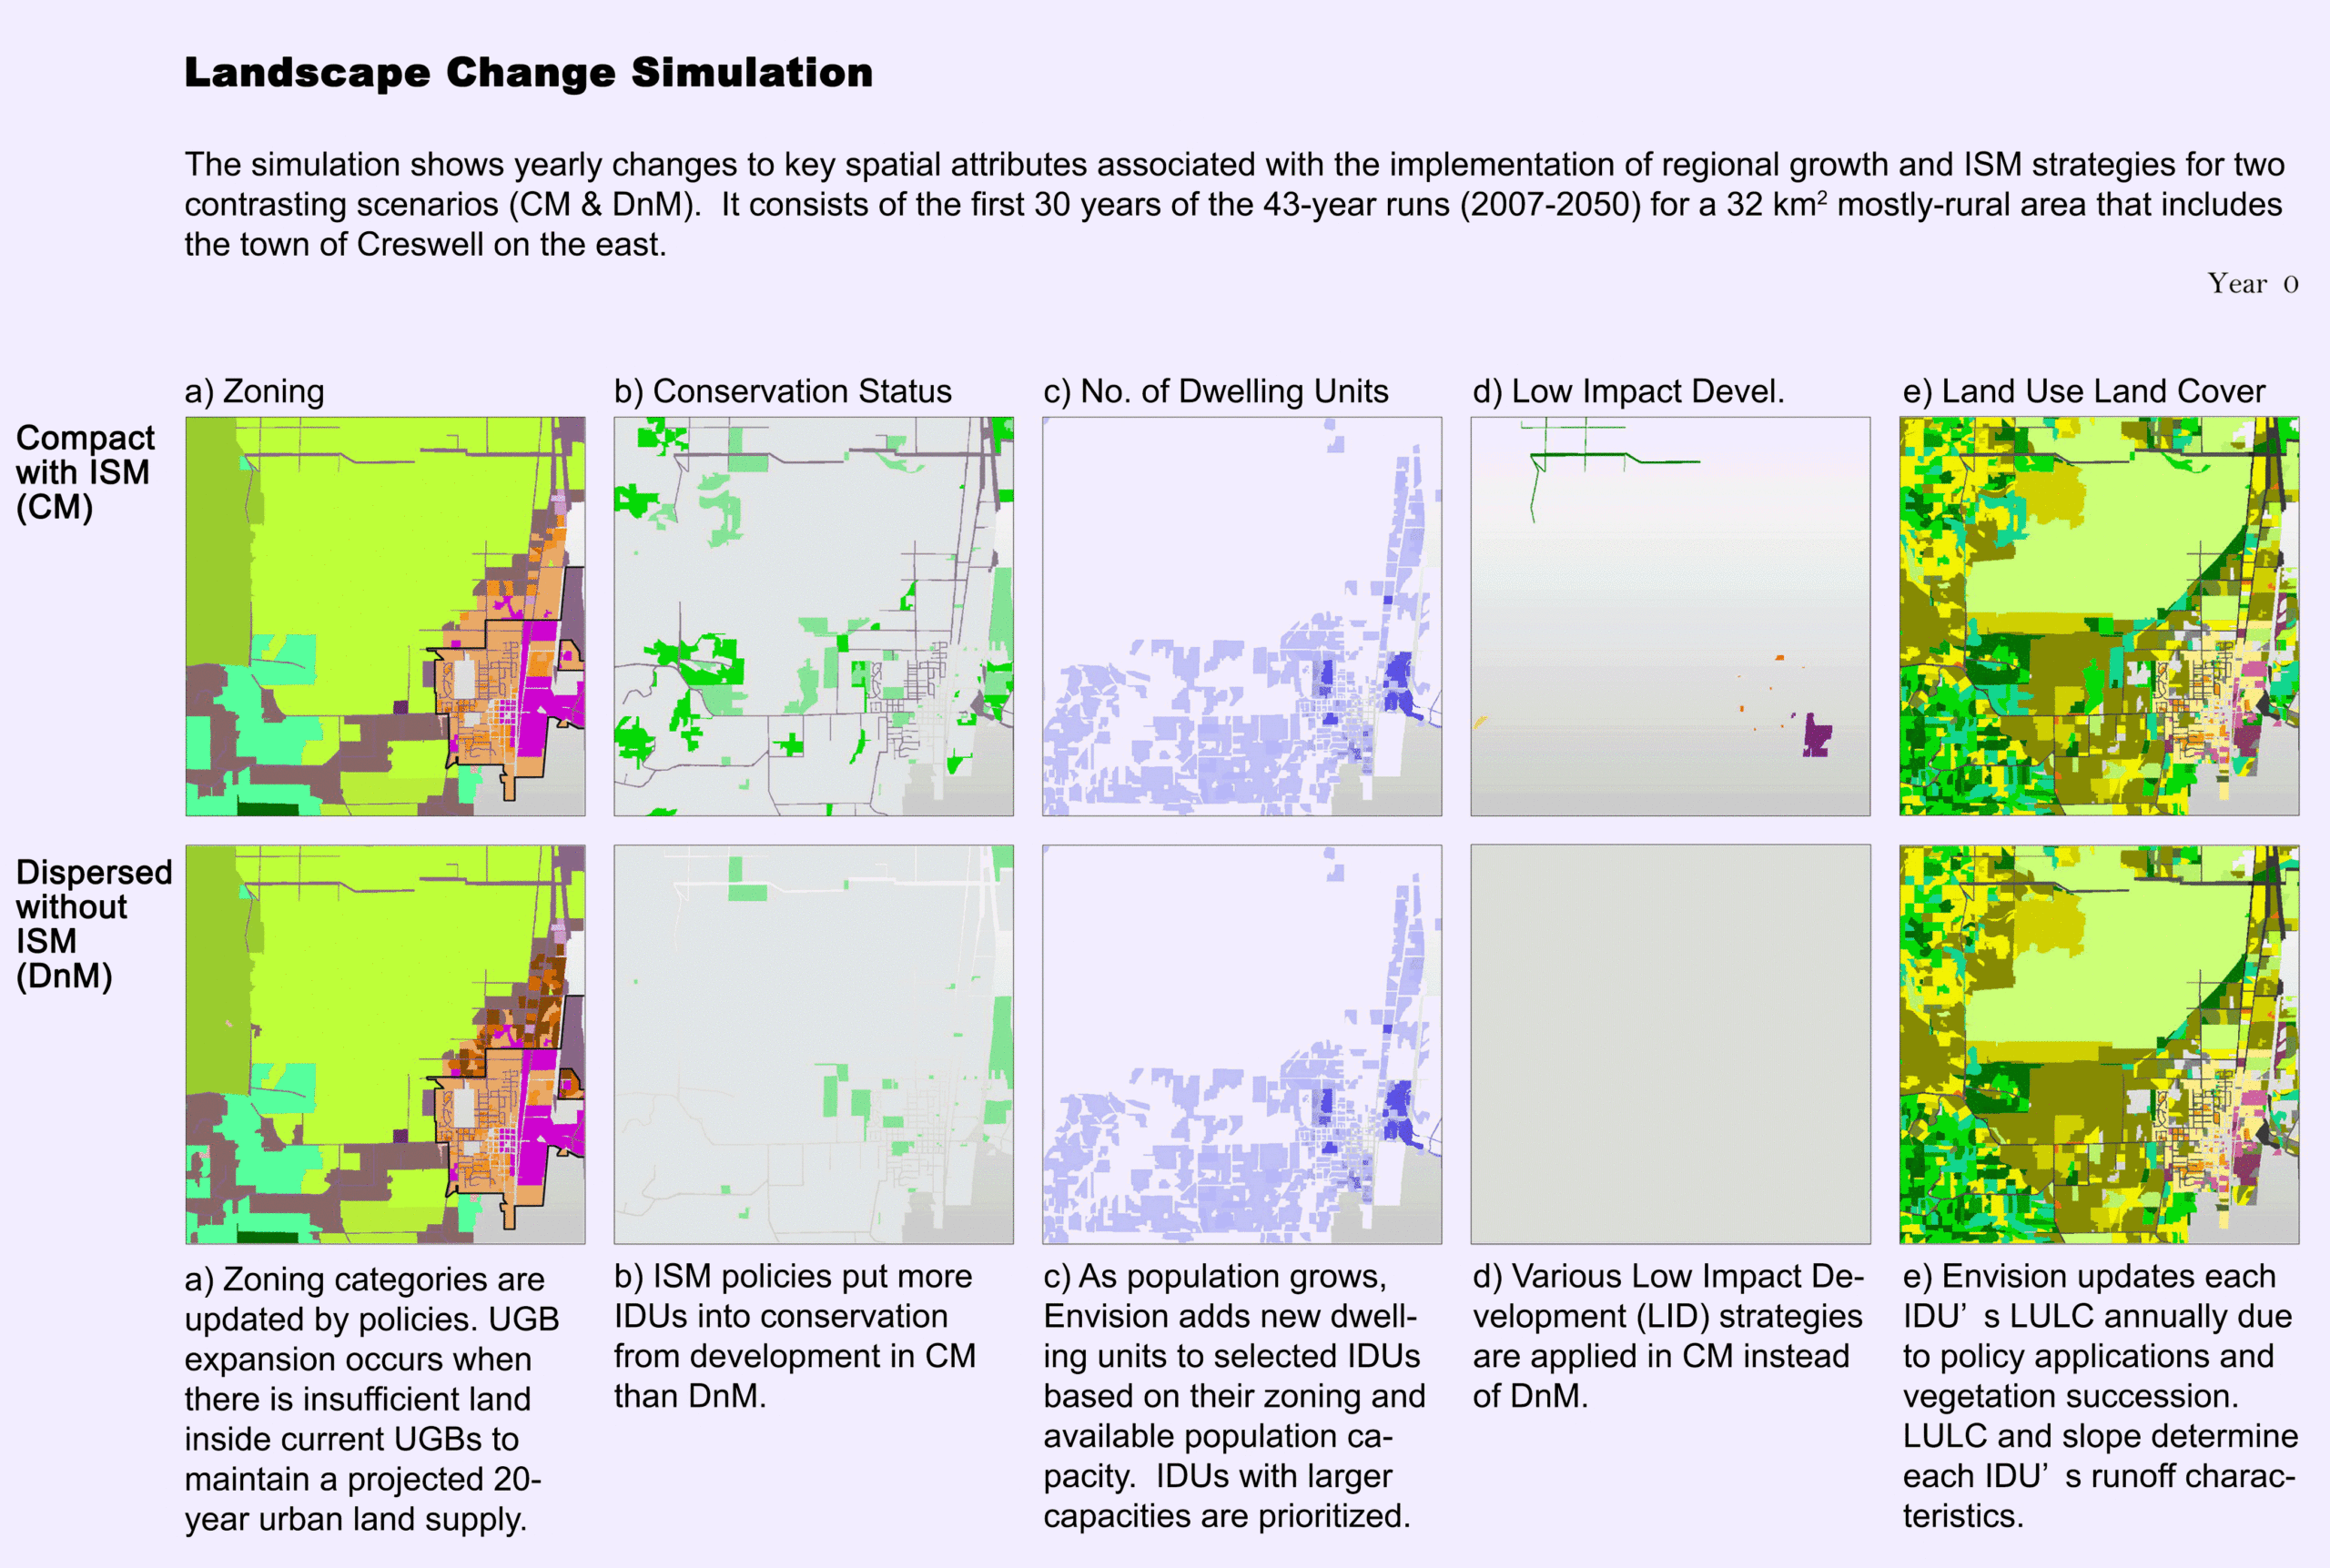 Landscape change simulation maps.